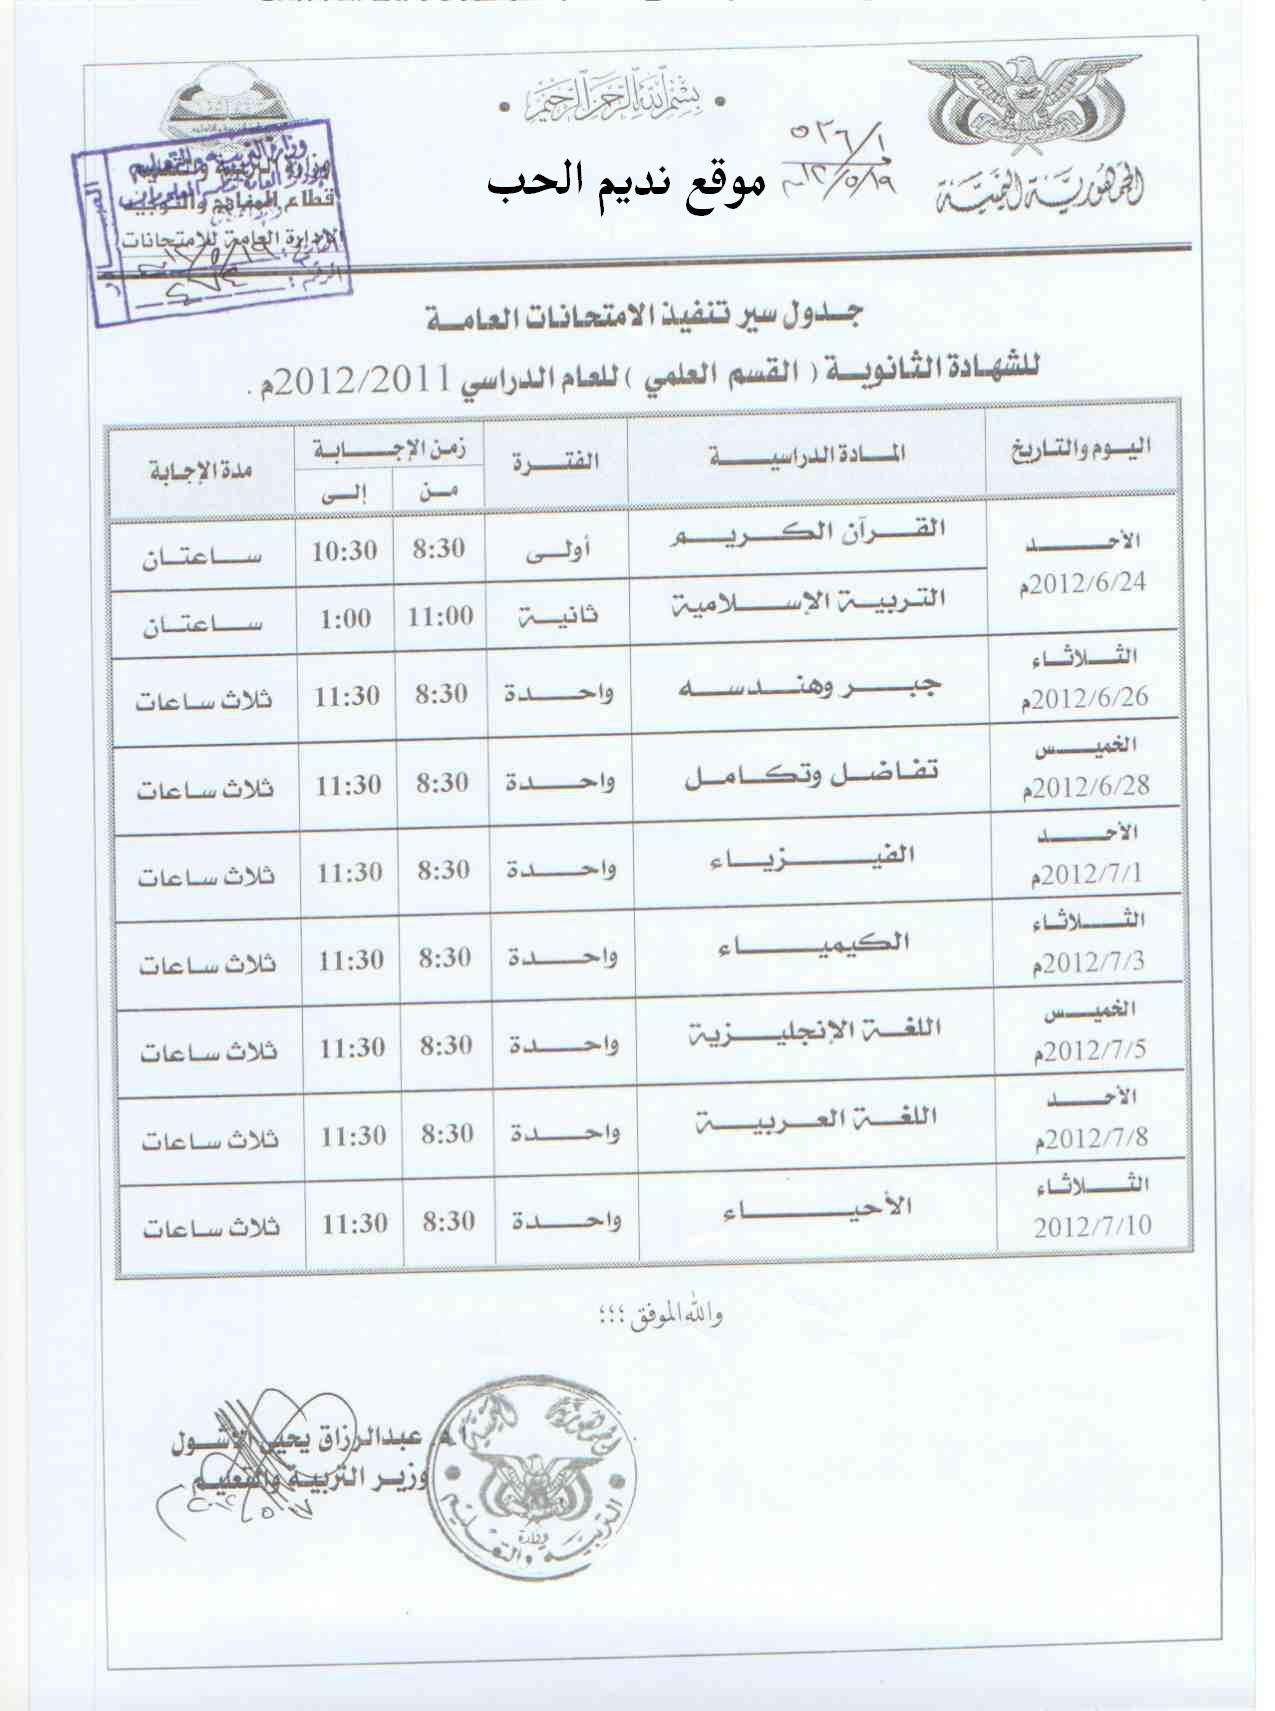 صورة جدول اختبارات الثانويه العامه قسم علمي اليمن 2012 Oouo_o12